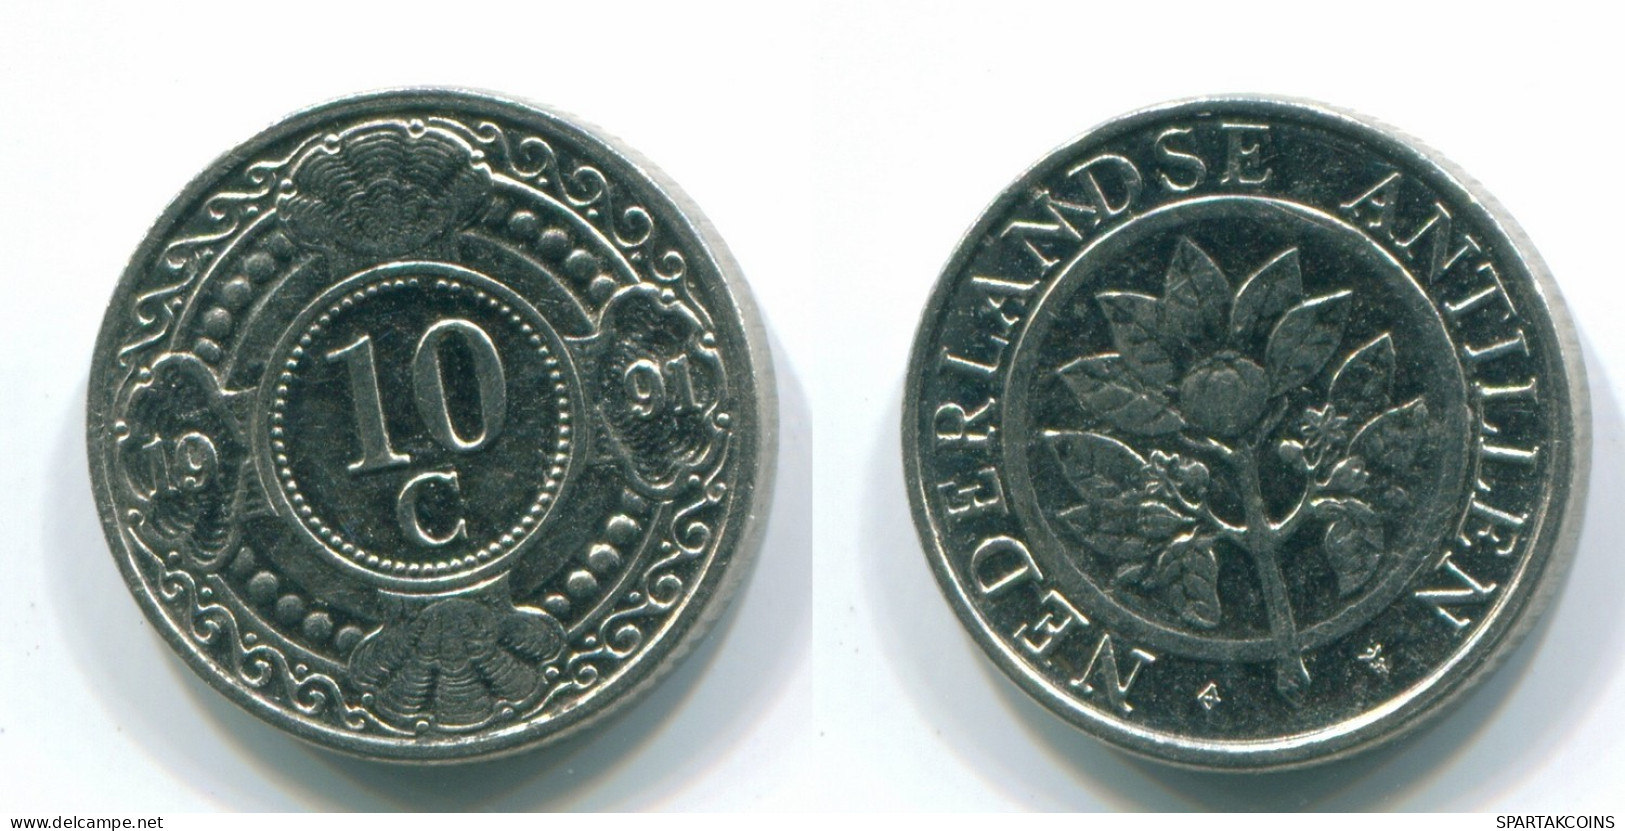 10 CENTS 1991 NETHERLANDS ANTILLES Nickel Colonial Coin #S11328.U.A - Niederländische Antillen